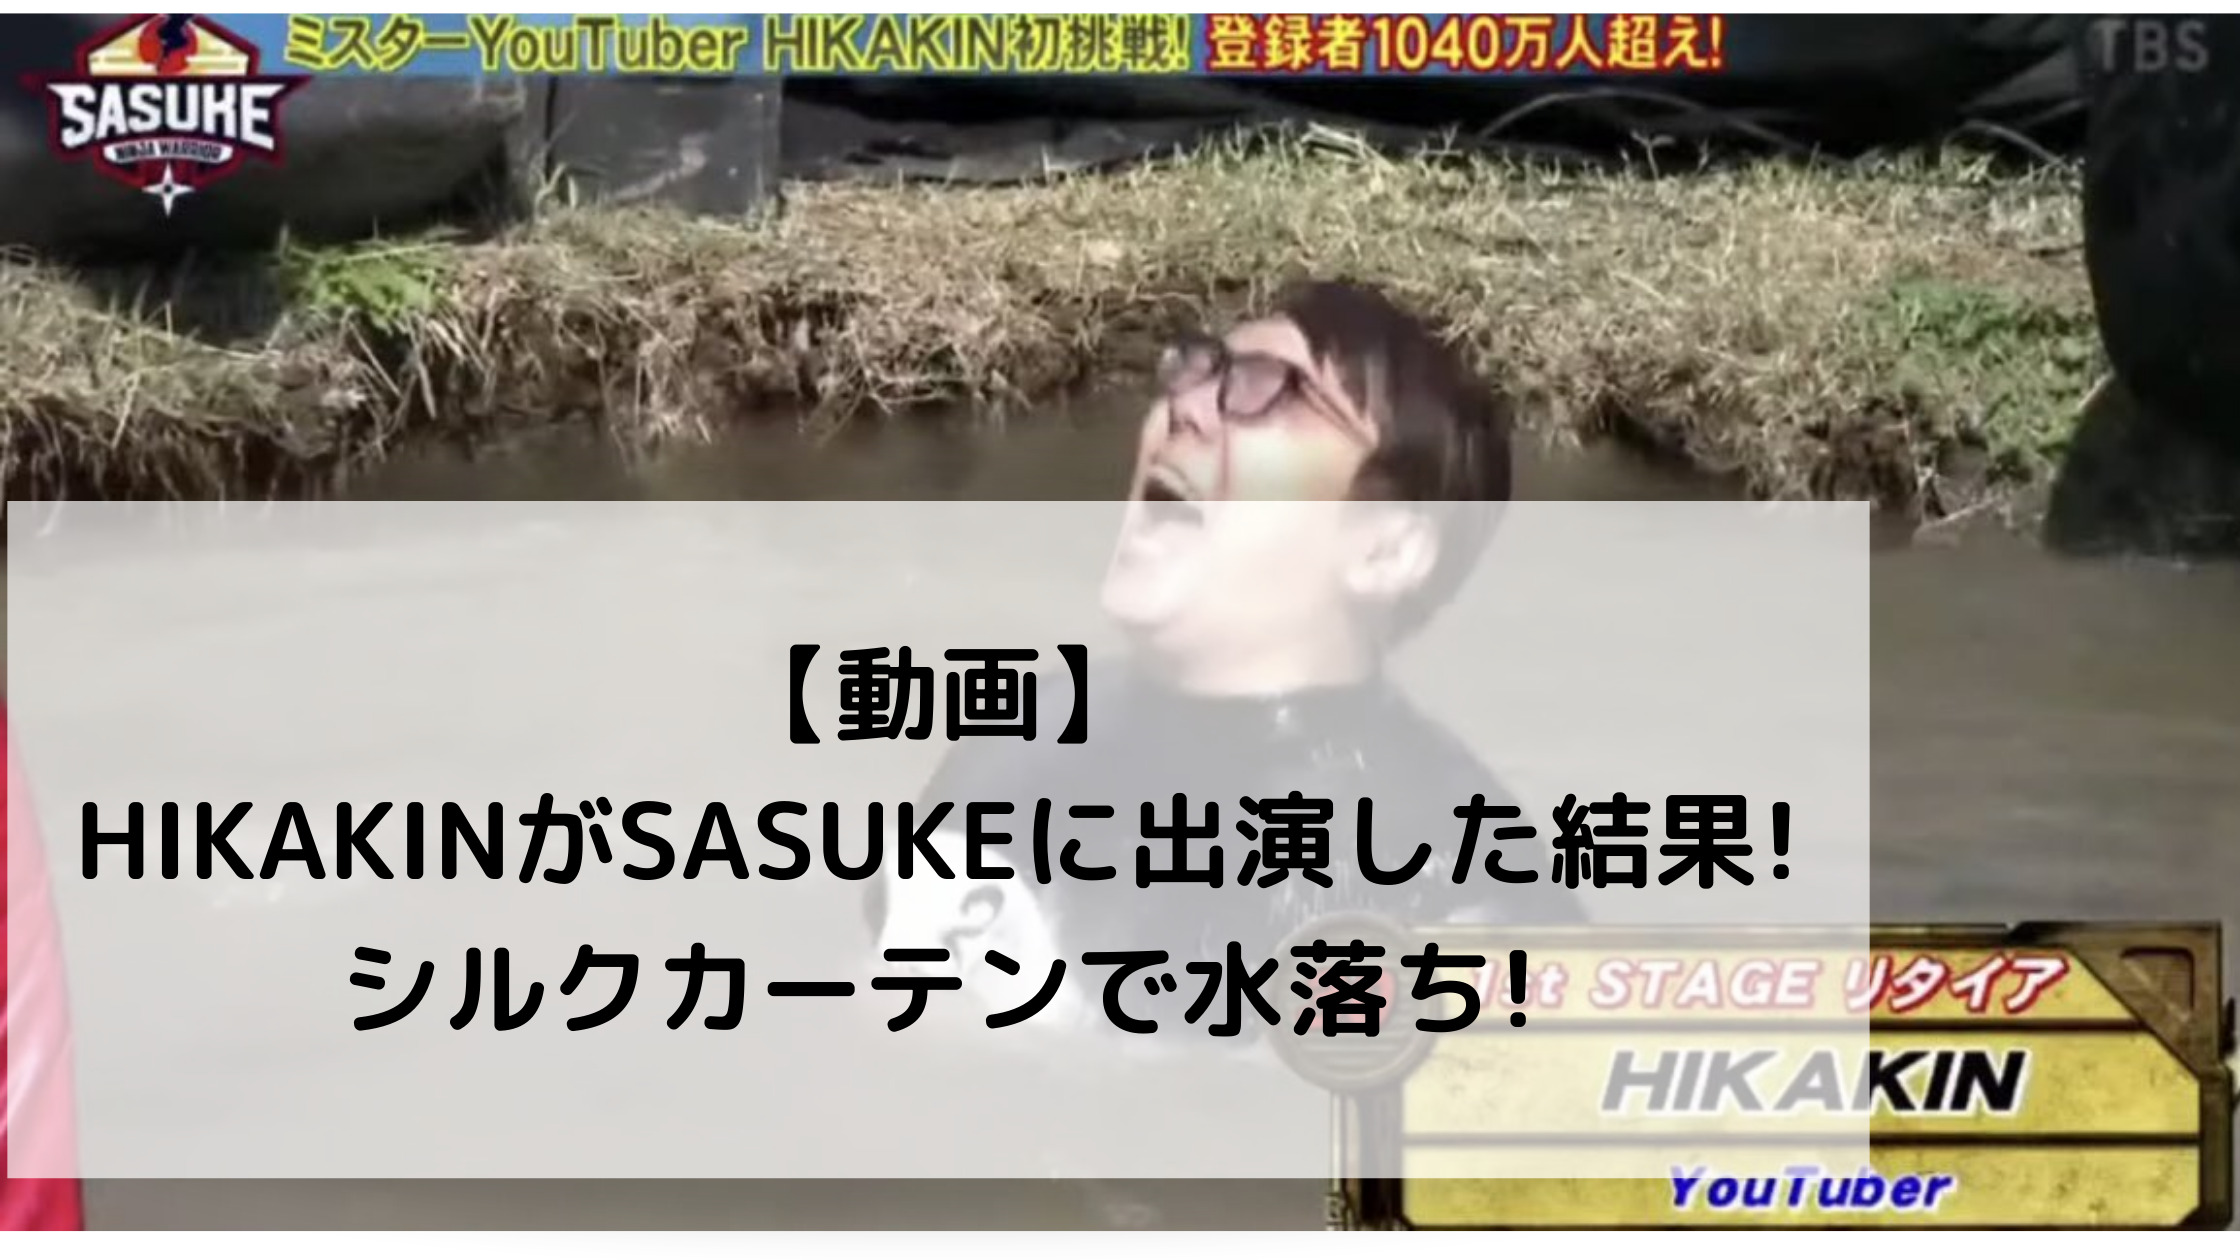 【動画】HIKAKINがSASUKEに出演した結果!シルクカーテンで水落ち!